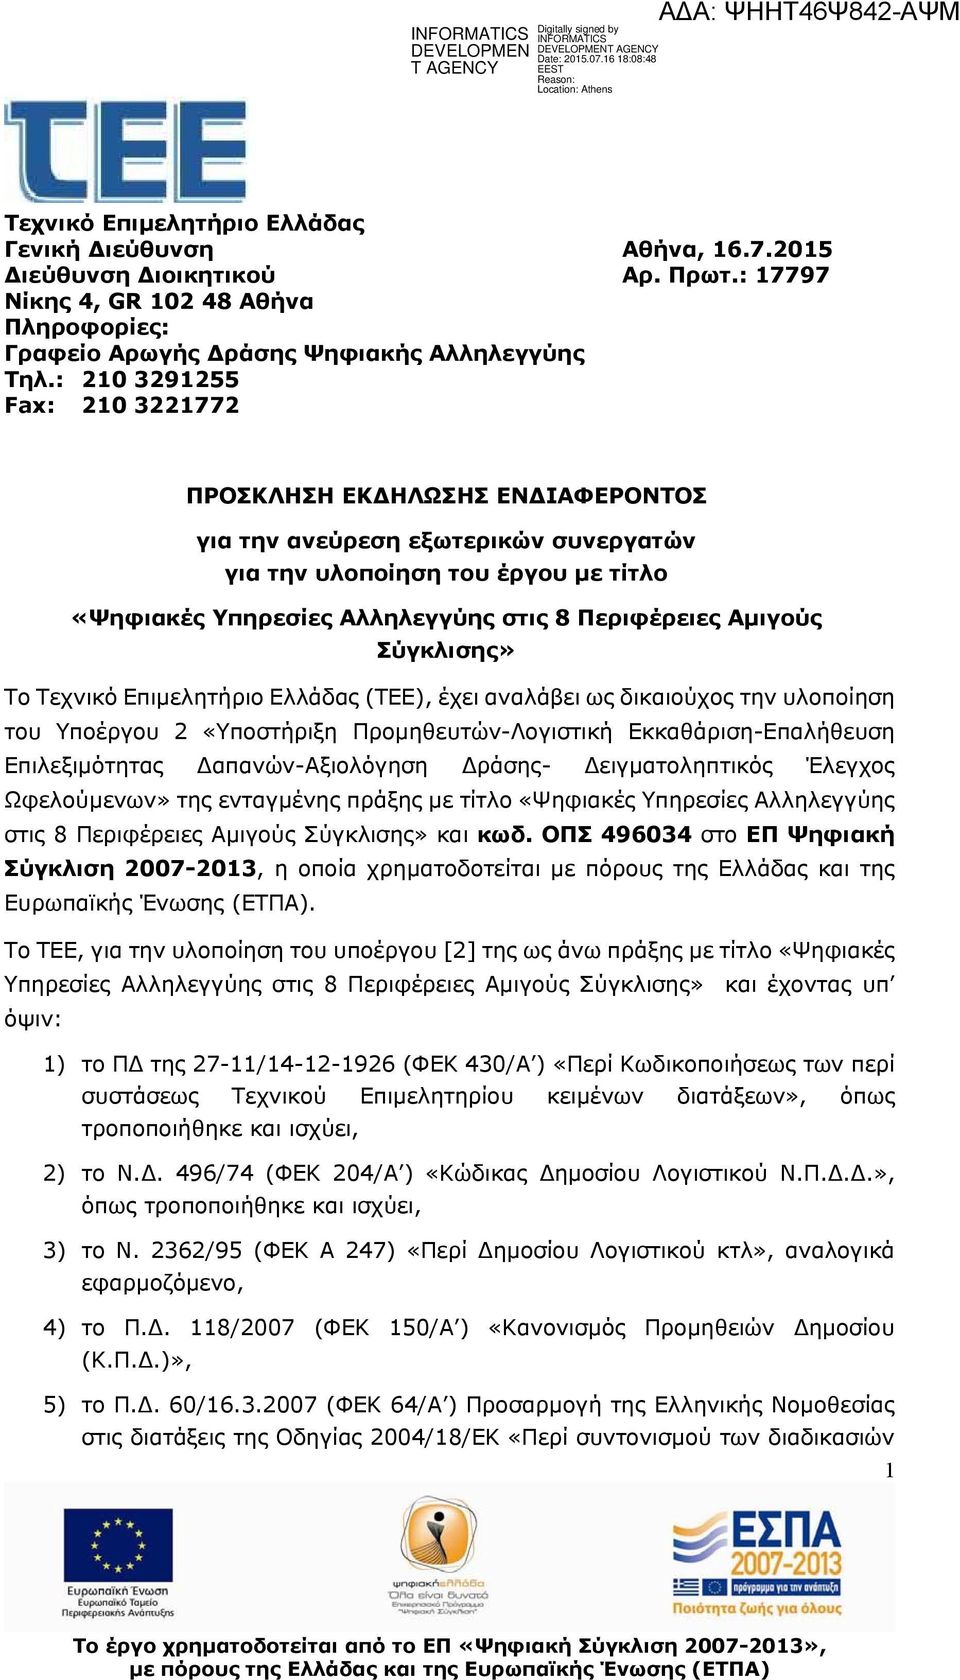 Σύγκλισης» Το Τεχνικό Επιμελητήριο Ελλάδας (ΤΕΕ), έχει αναλάβει ως δικαιούχος την υλοποίηση του Υποέργου 2 «Υποστήριξη Προμηθευτών-Λογιστική Εκκαθάριση-Επαλήθευση Επιλεξιμότητας απανών-αξιολόγηση